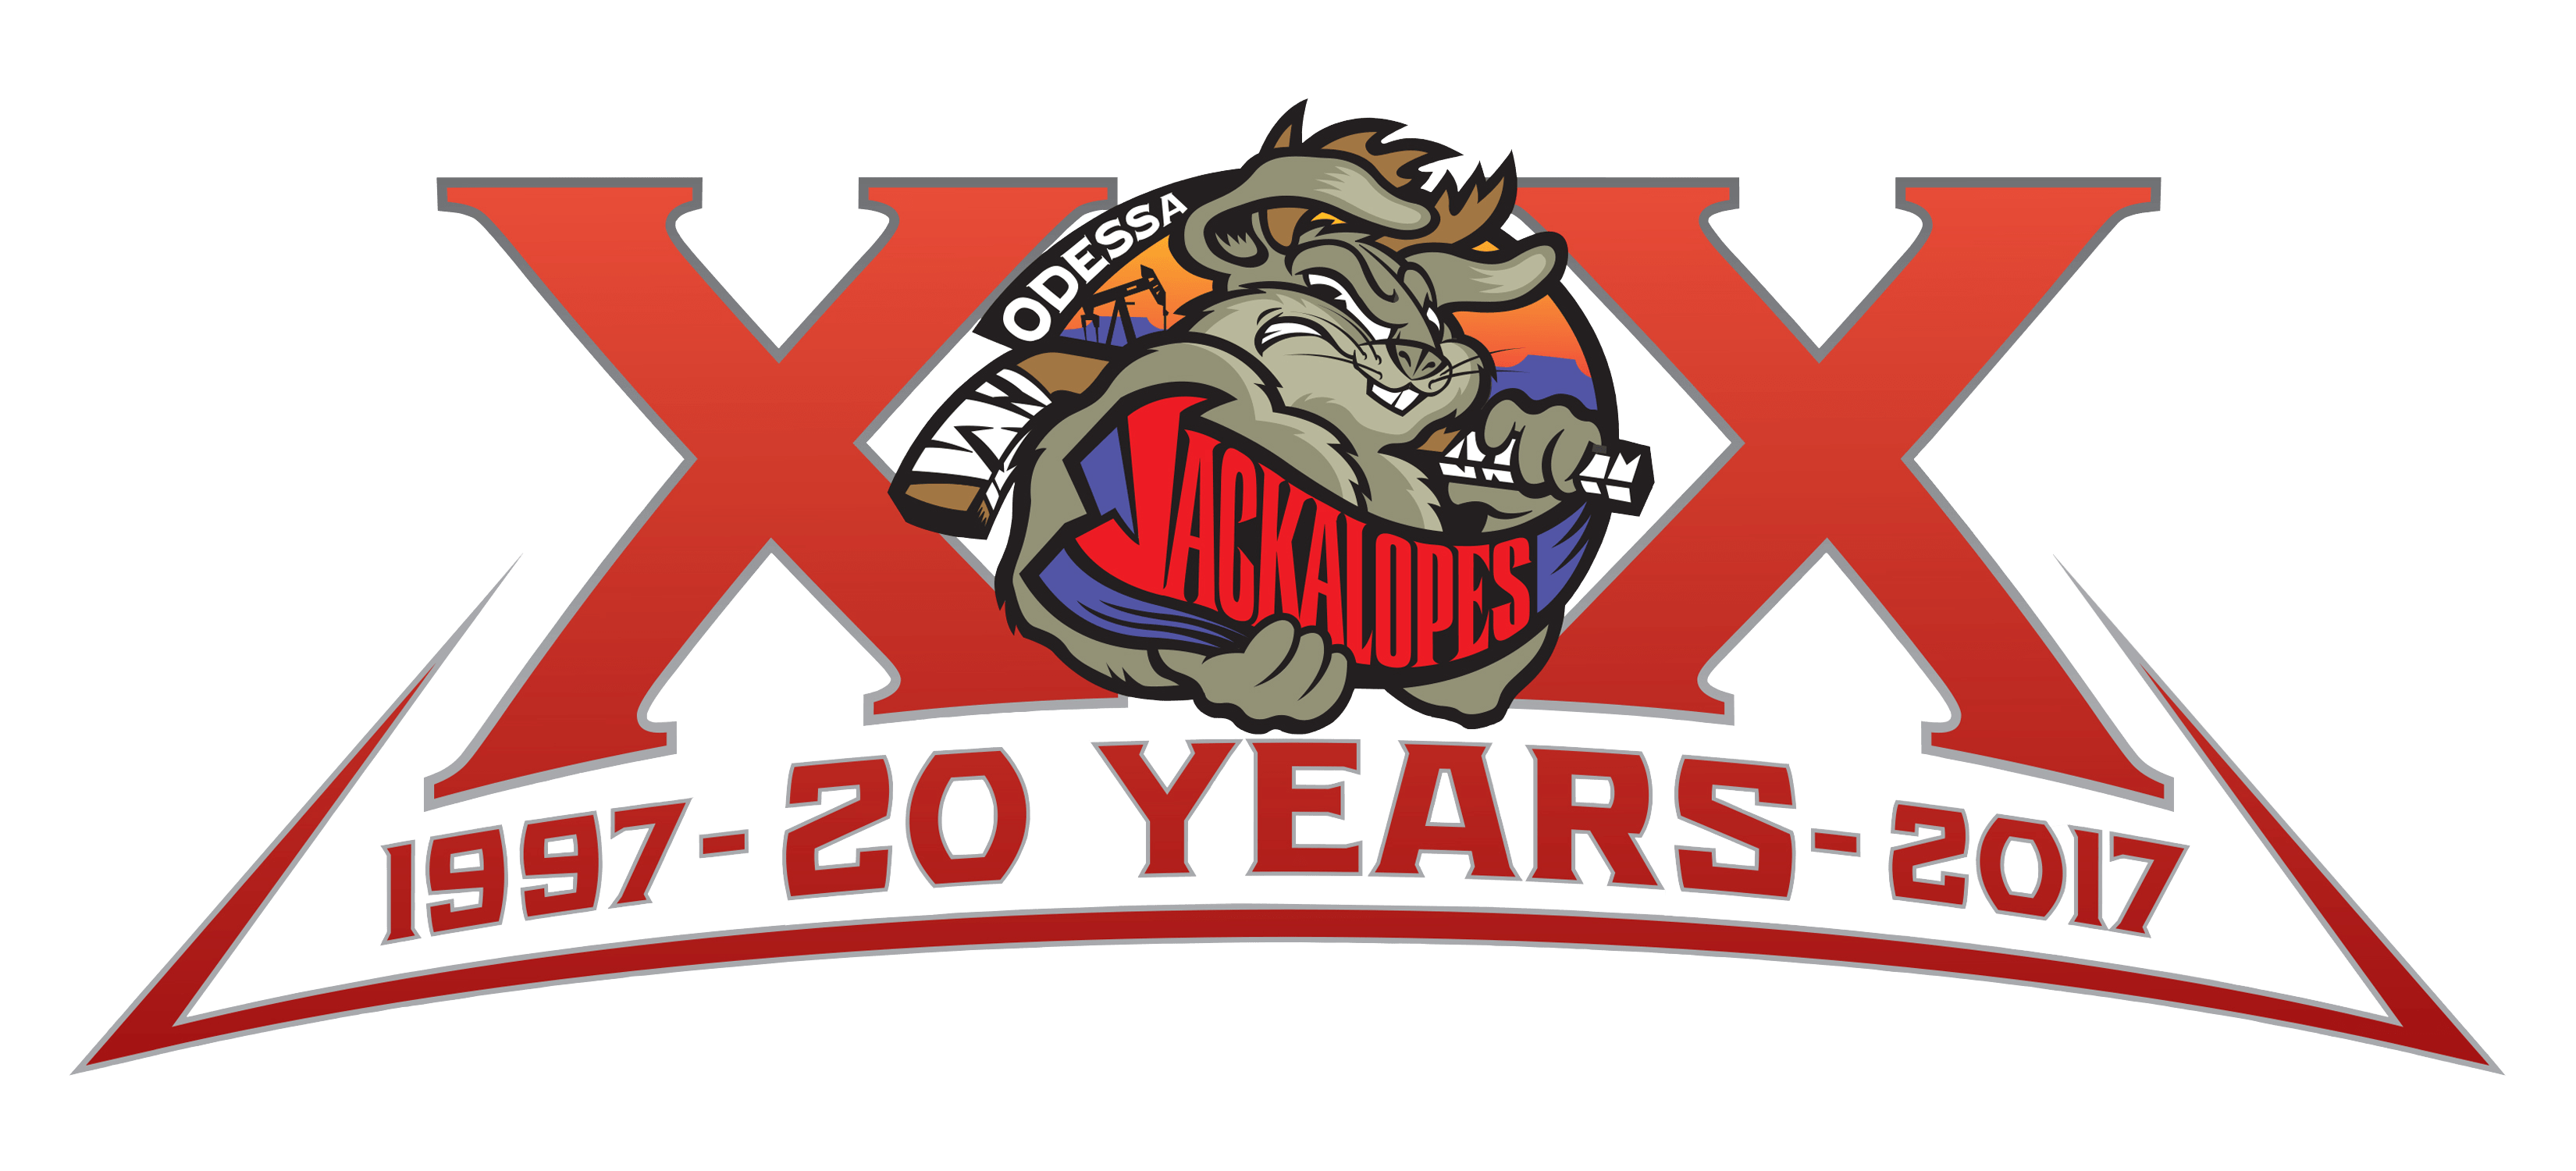 Jackalopes Sports Logo - Odessa Jackalopes Anniversary Logo - North American Hockey League ...